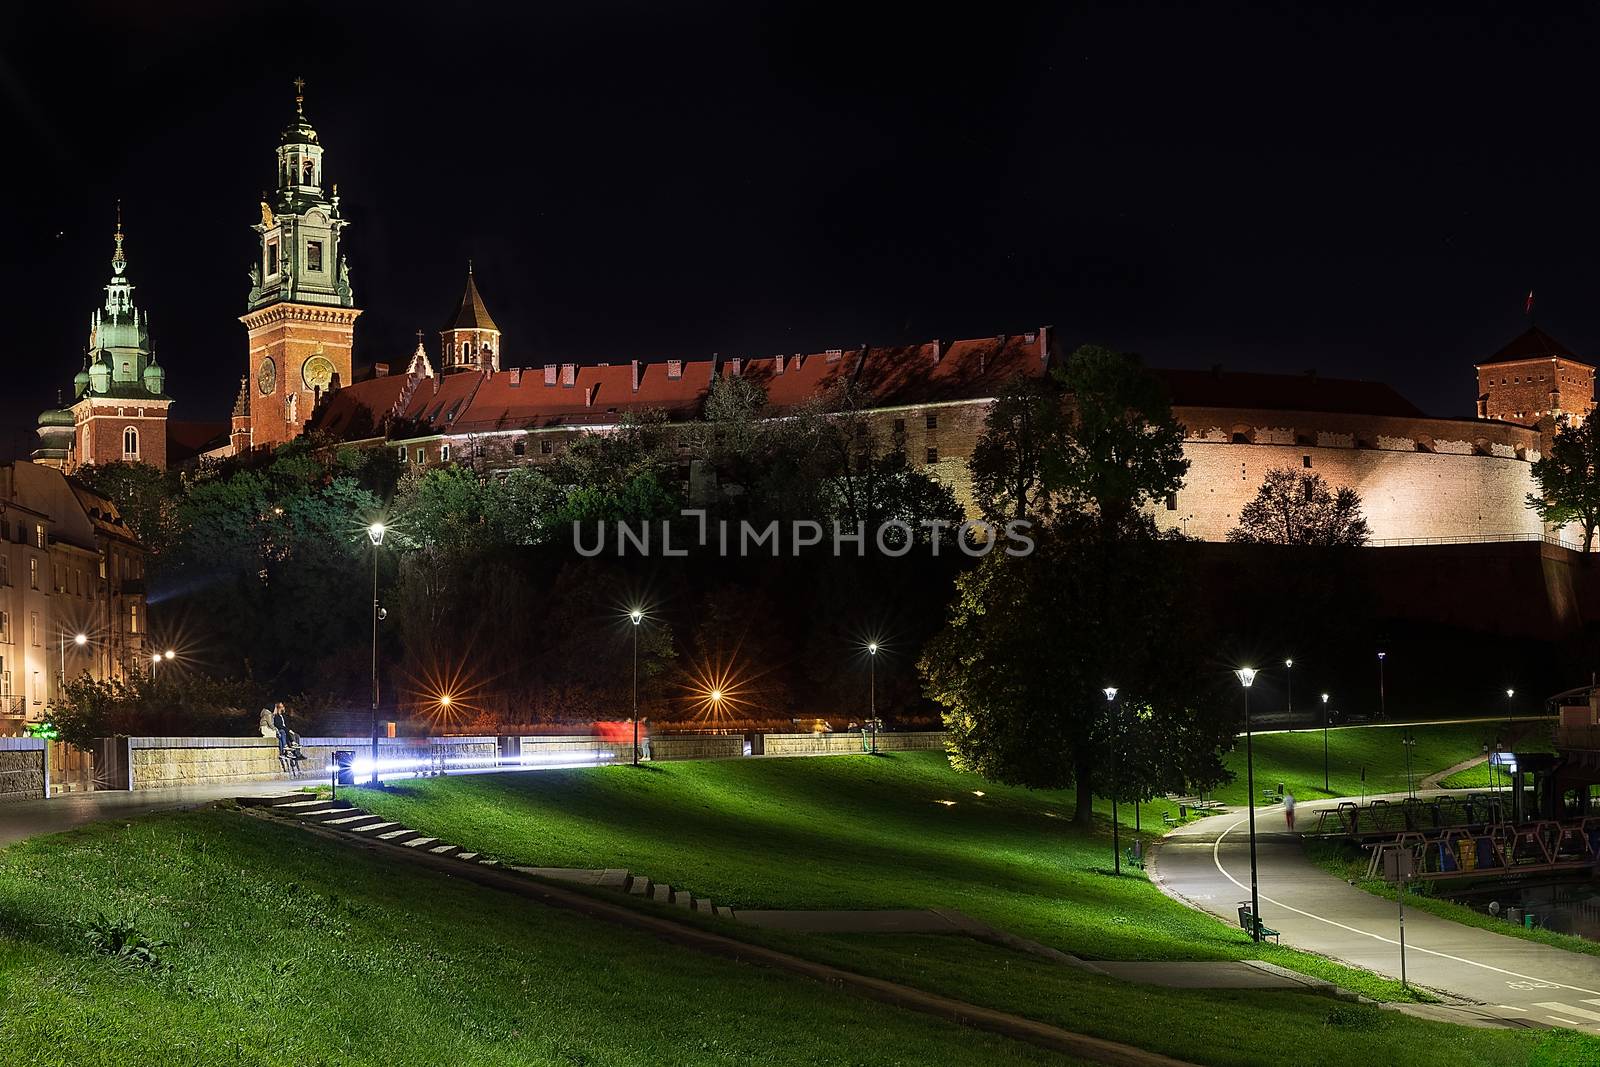 Wawel Royal Castle in the night scene in Krakow, Poland by mkenwoo